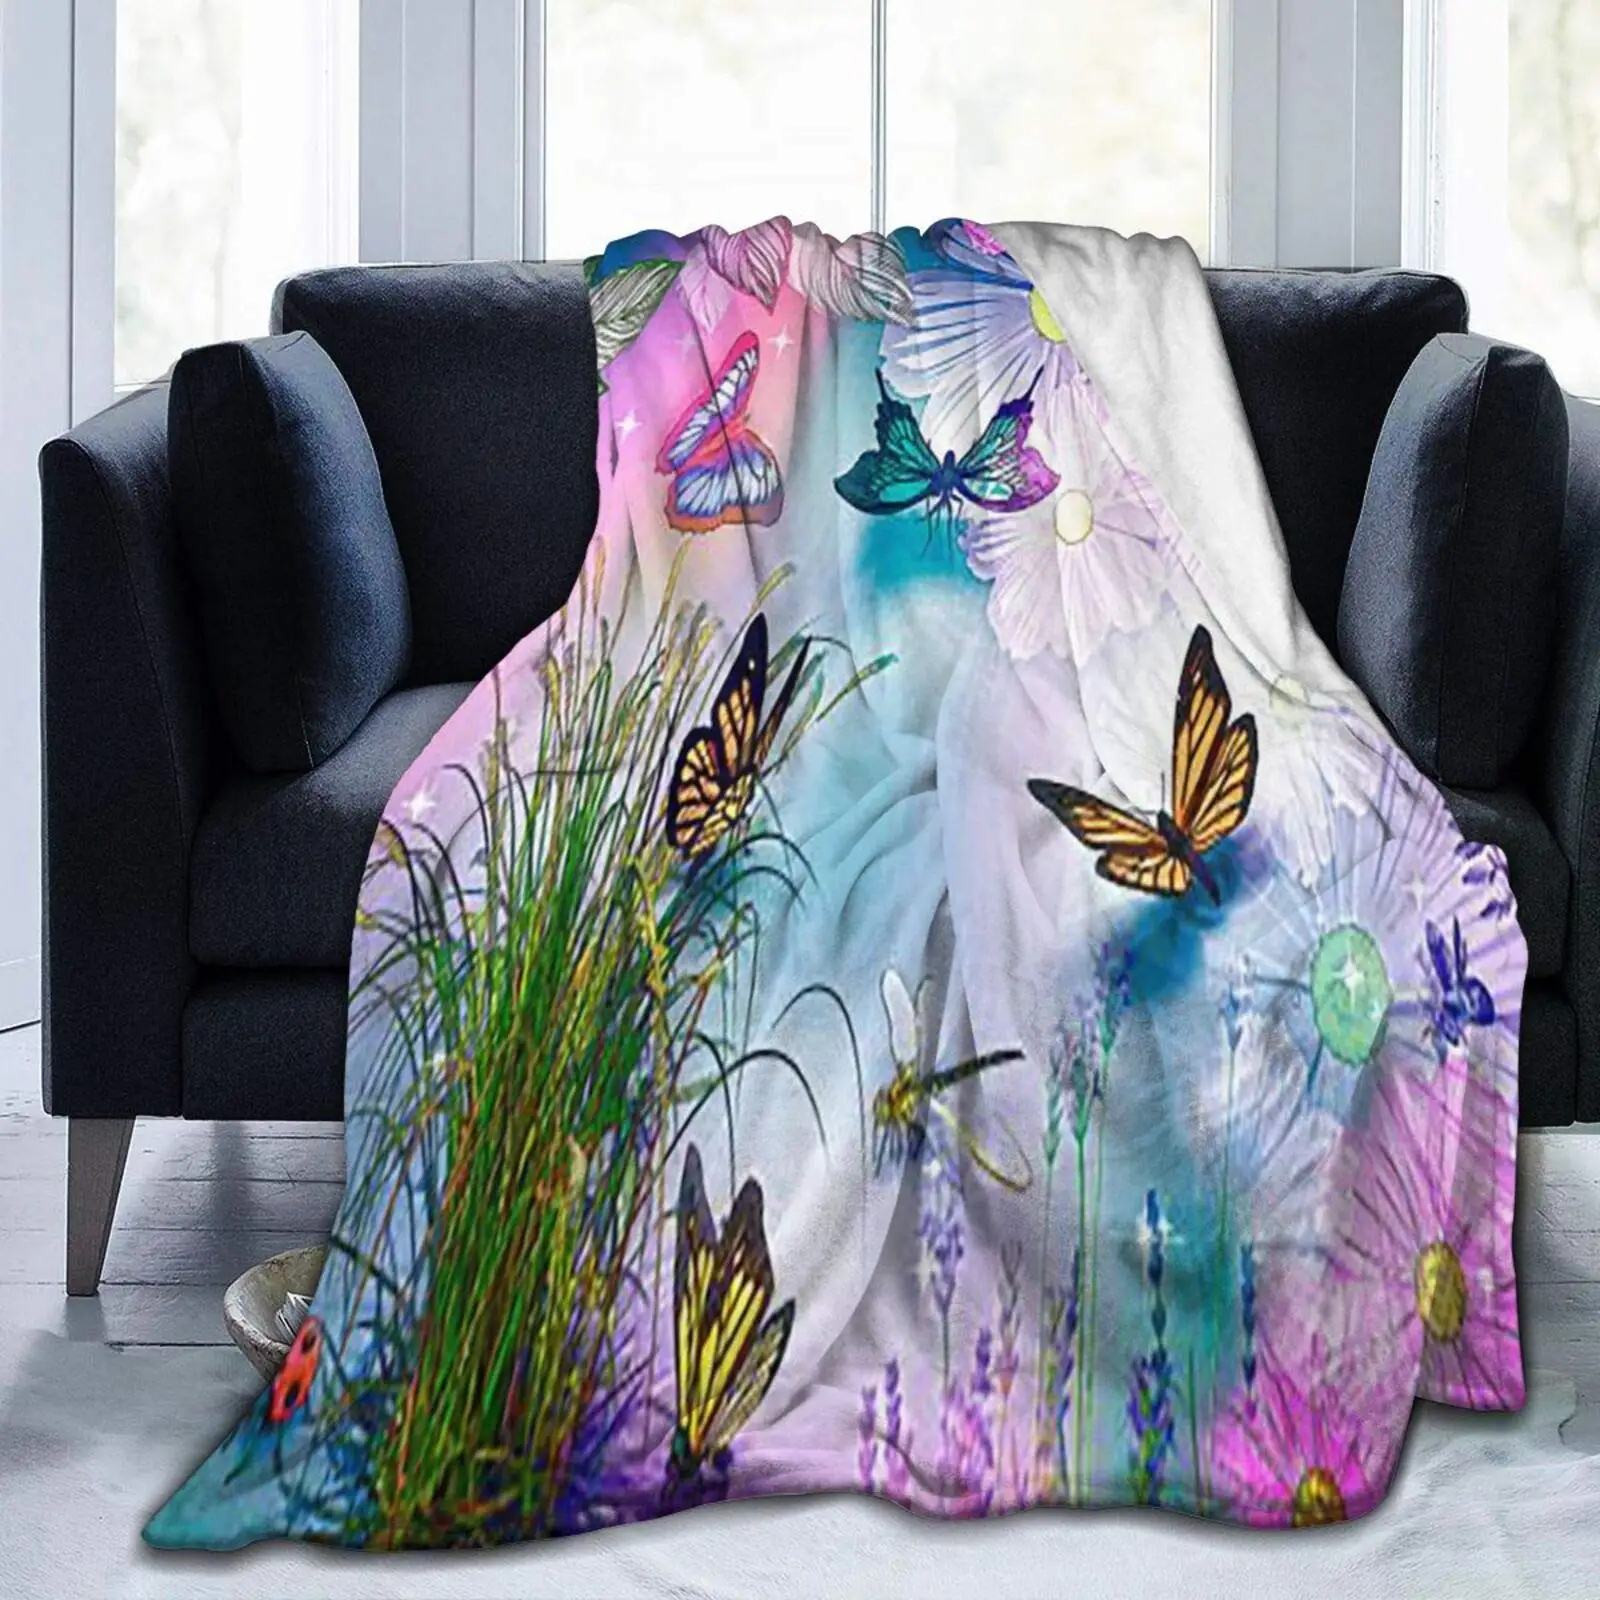 

Супермягкое фланелевое одеяло с бабочками и цветами, легкий пушистый флисовый плед 40 х50 дюймов, покрывало для кровати, дивана